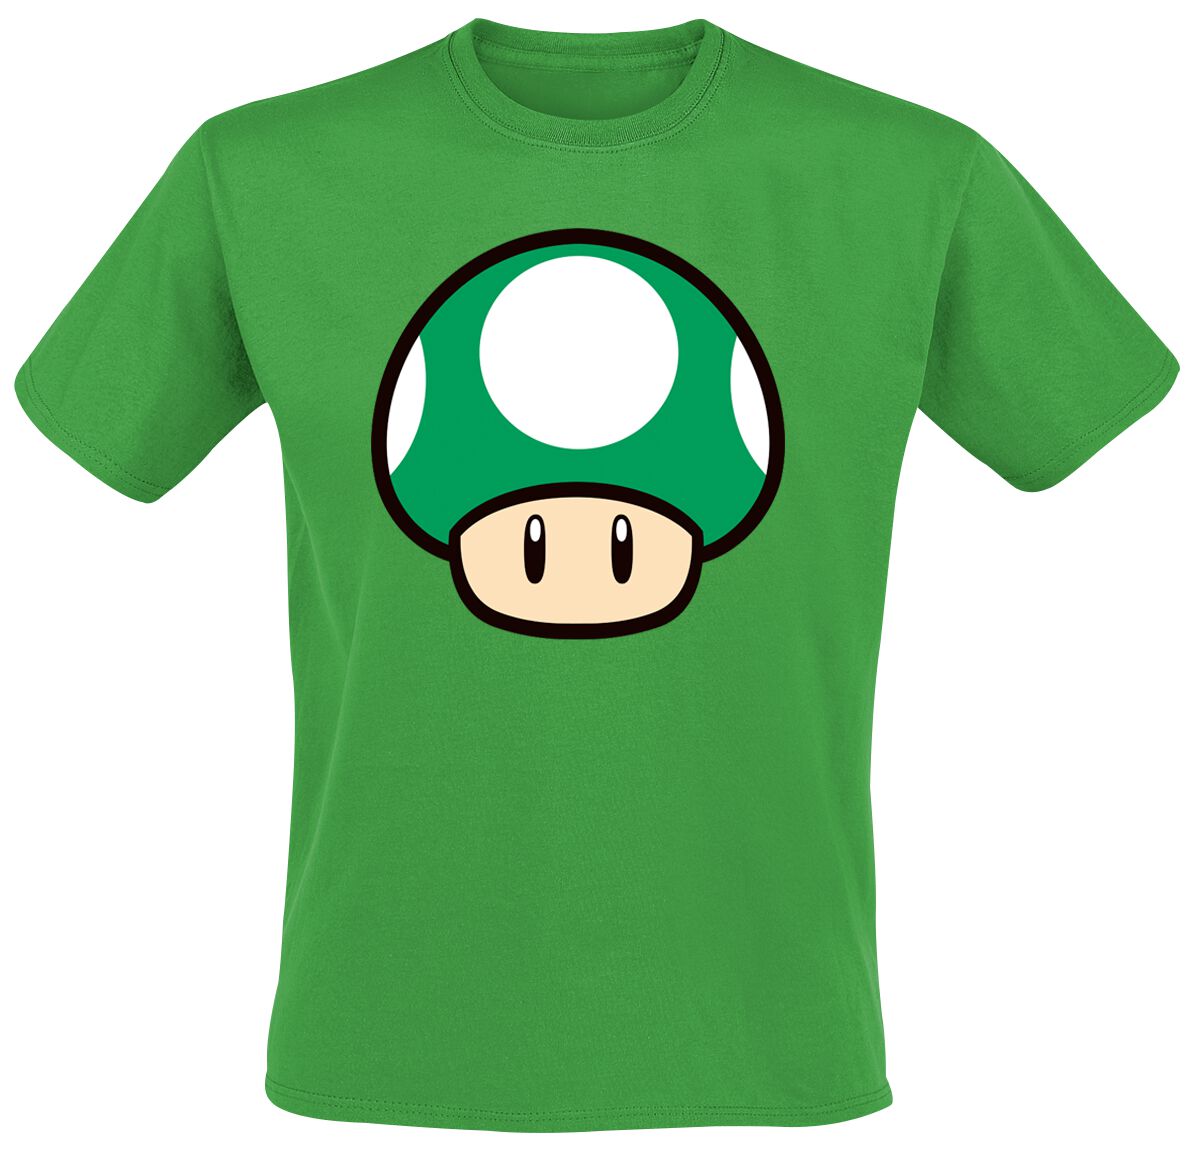 Super Mario Mushroom T-Shirt grün in S